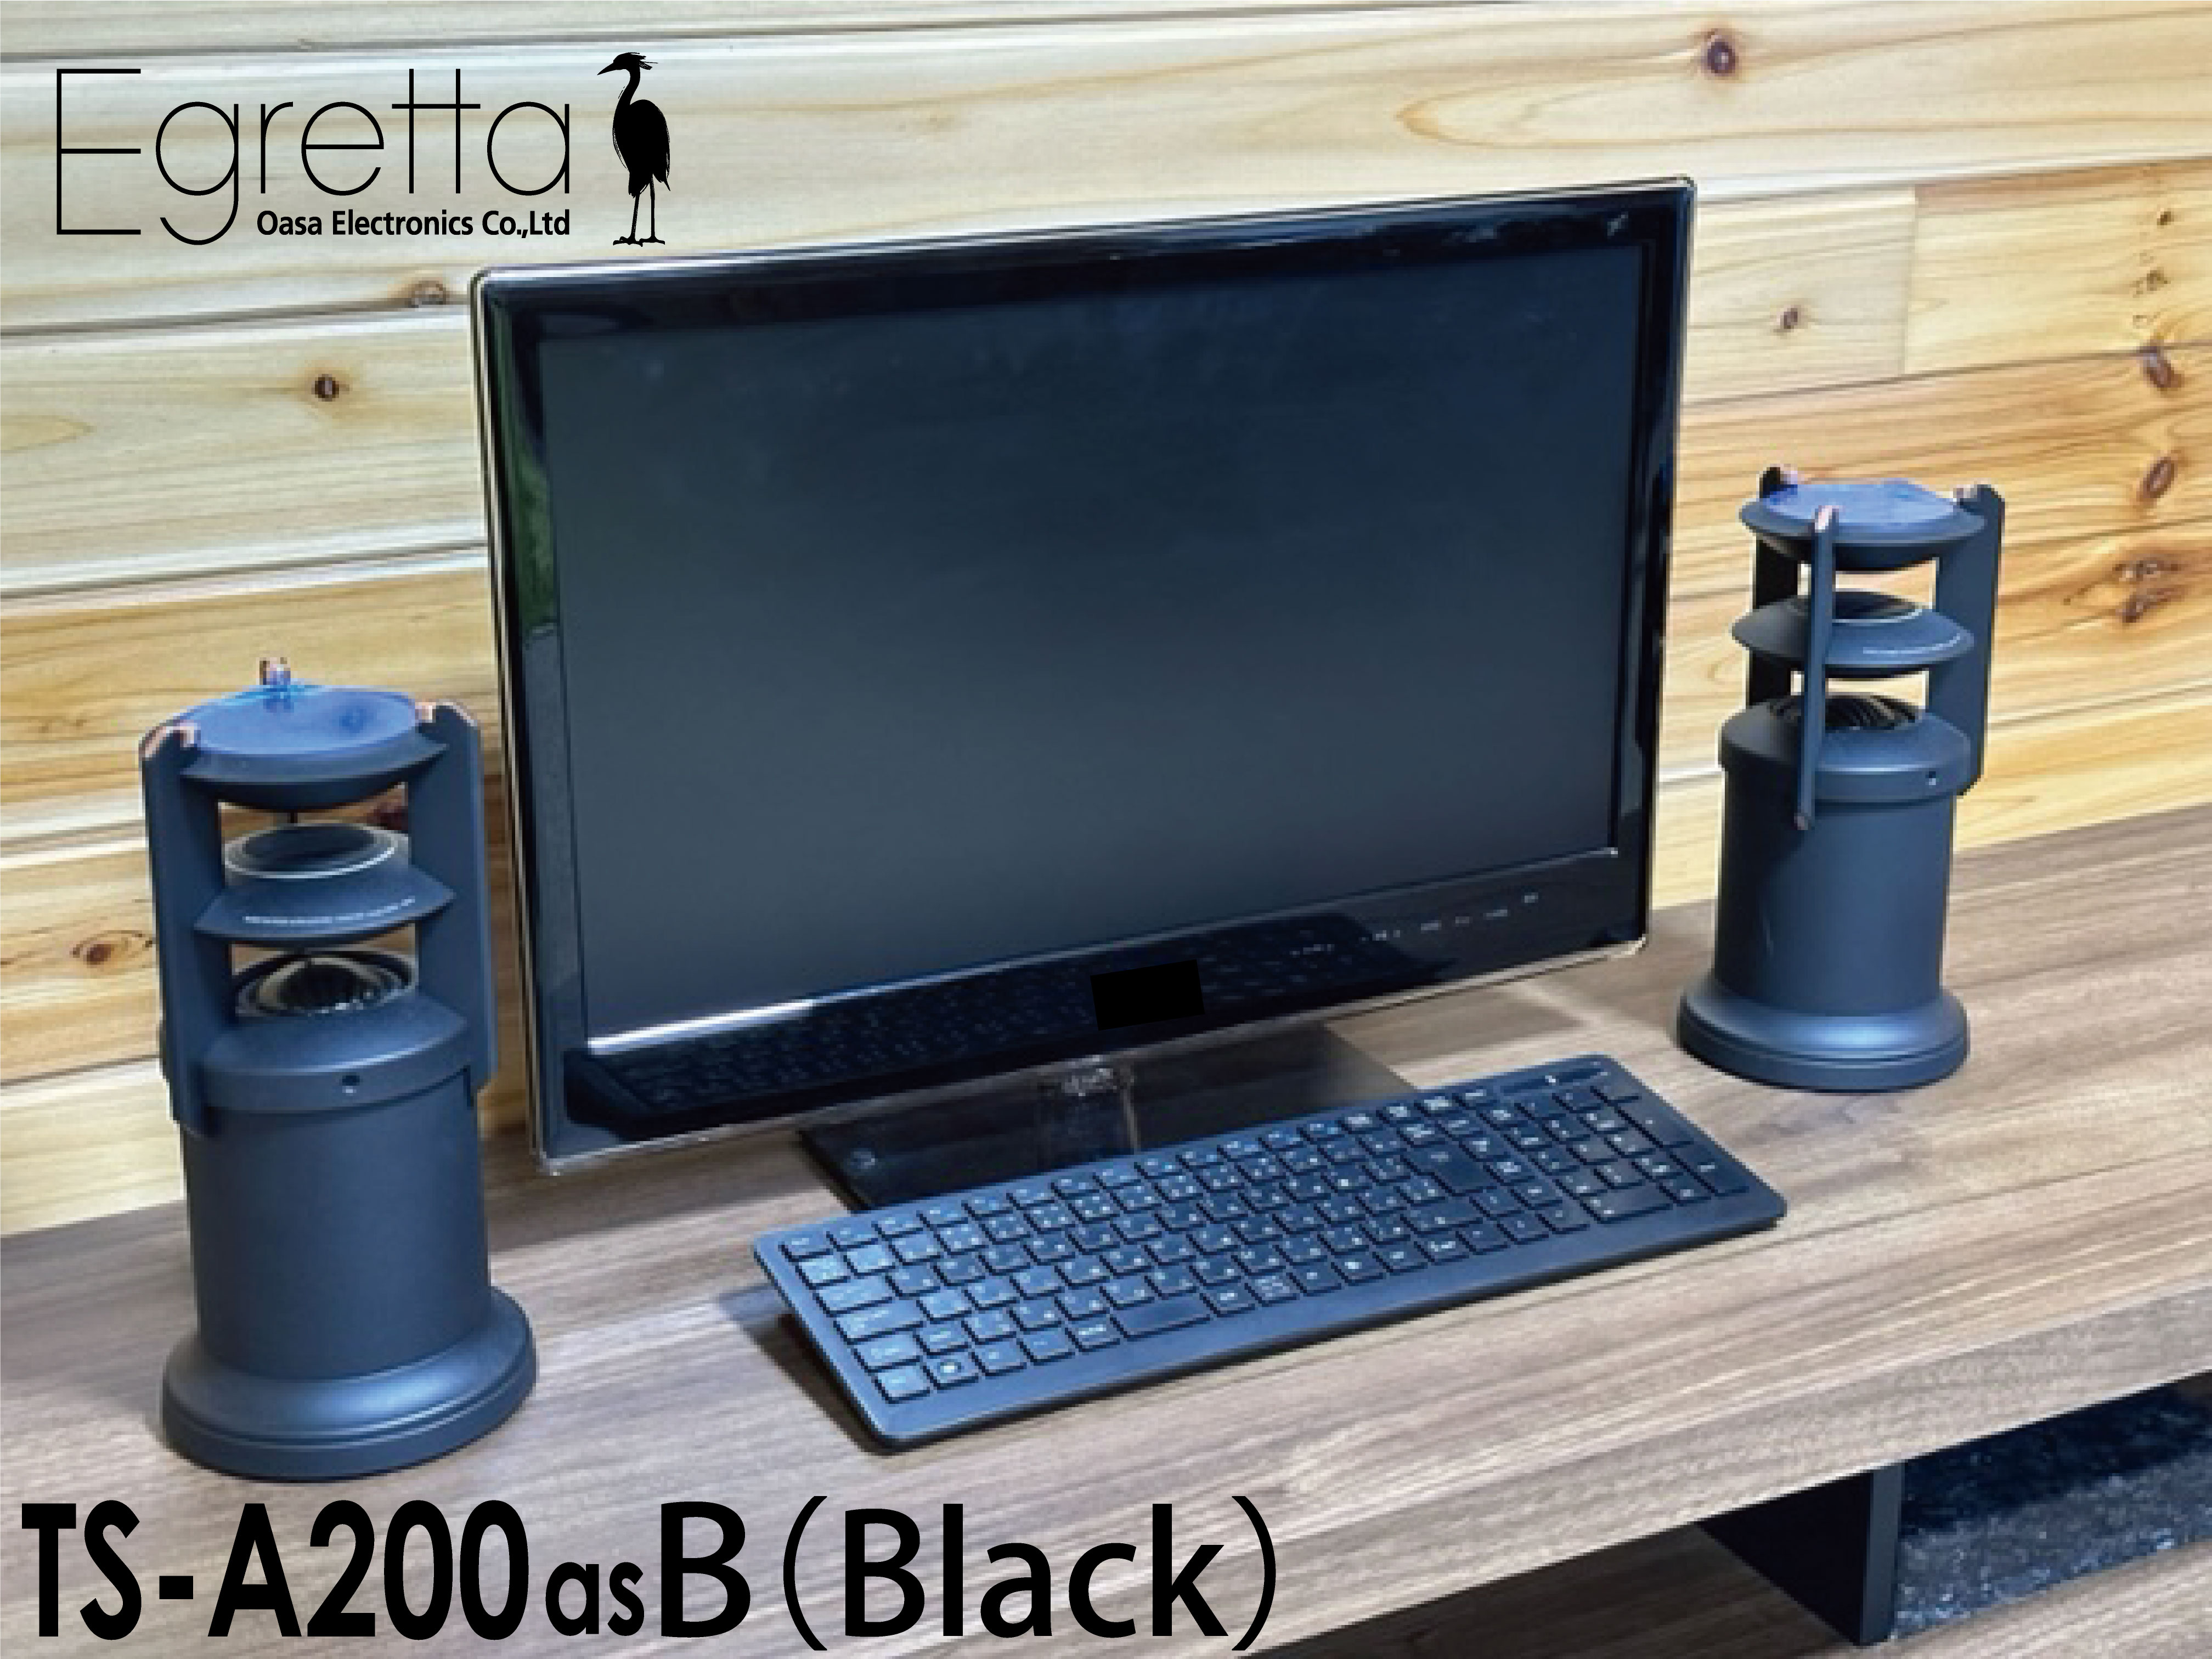 スピーカー デスクトップサイズ Egretta エグレッタ TS-A200asB black ハイレゾ対応 アンプ内蔵 全方位ステレオスピーカー PC インテリア リビング 新築